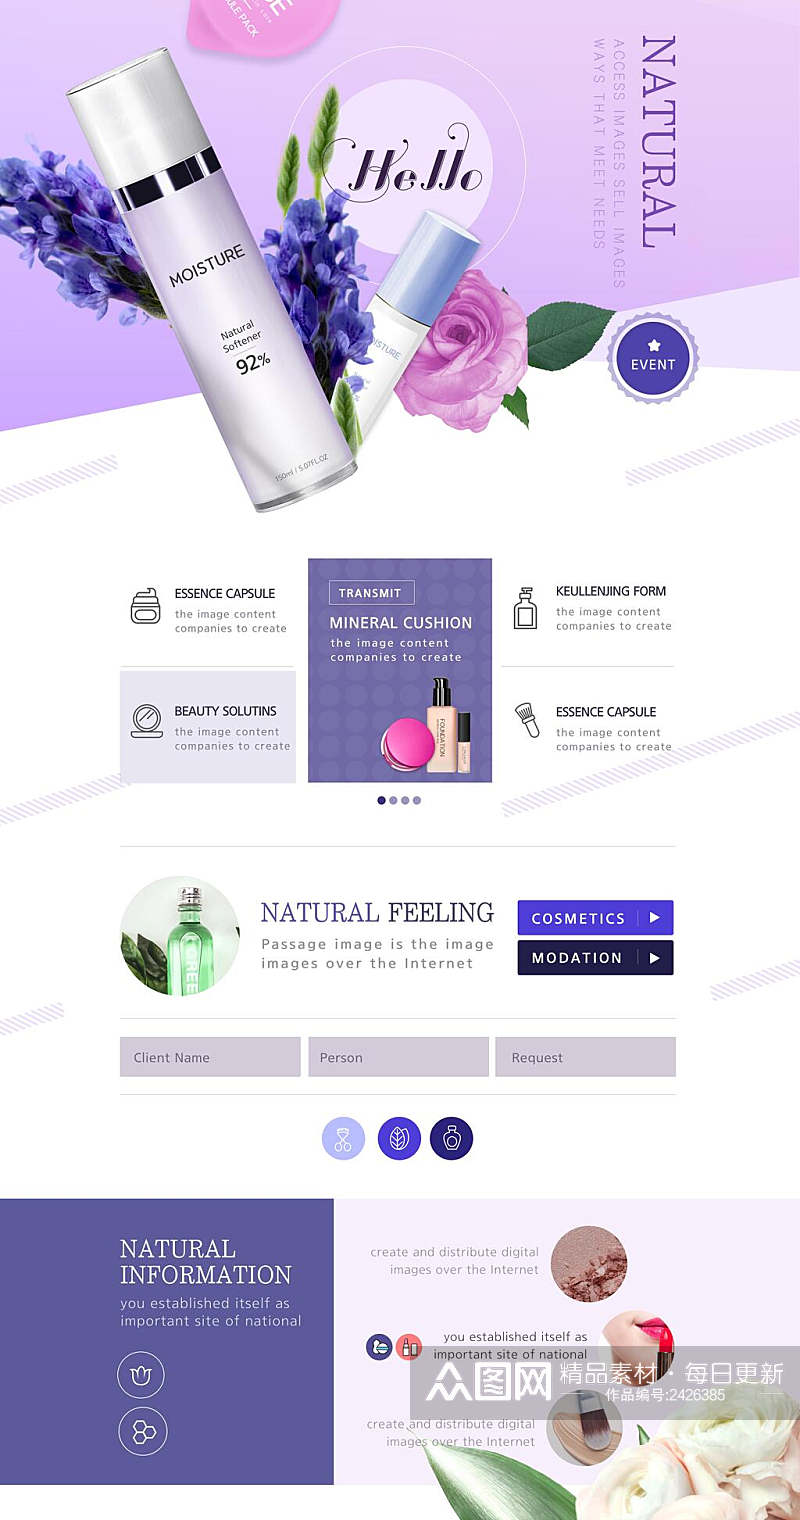 紫色时尚美妆详情网页设计素材